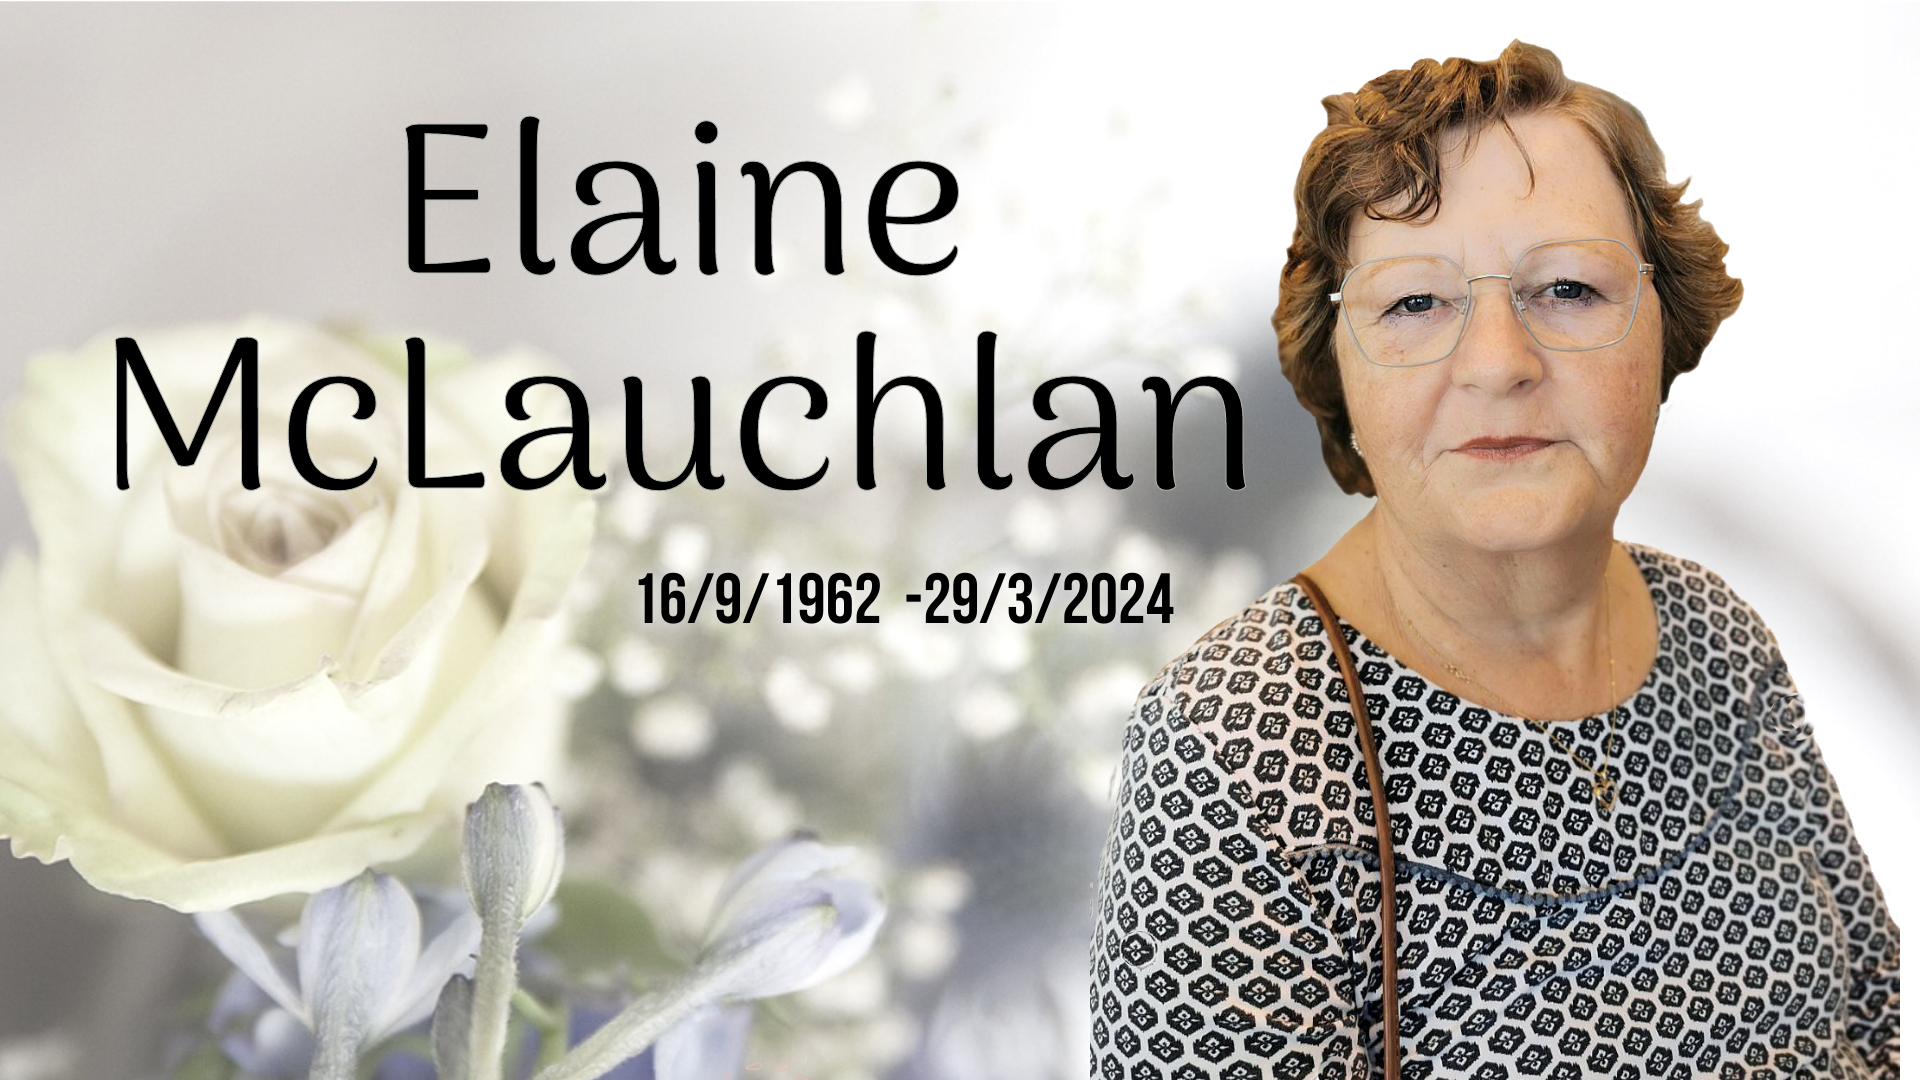 McLauchlan, Elaine